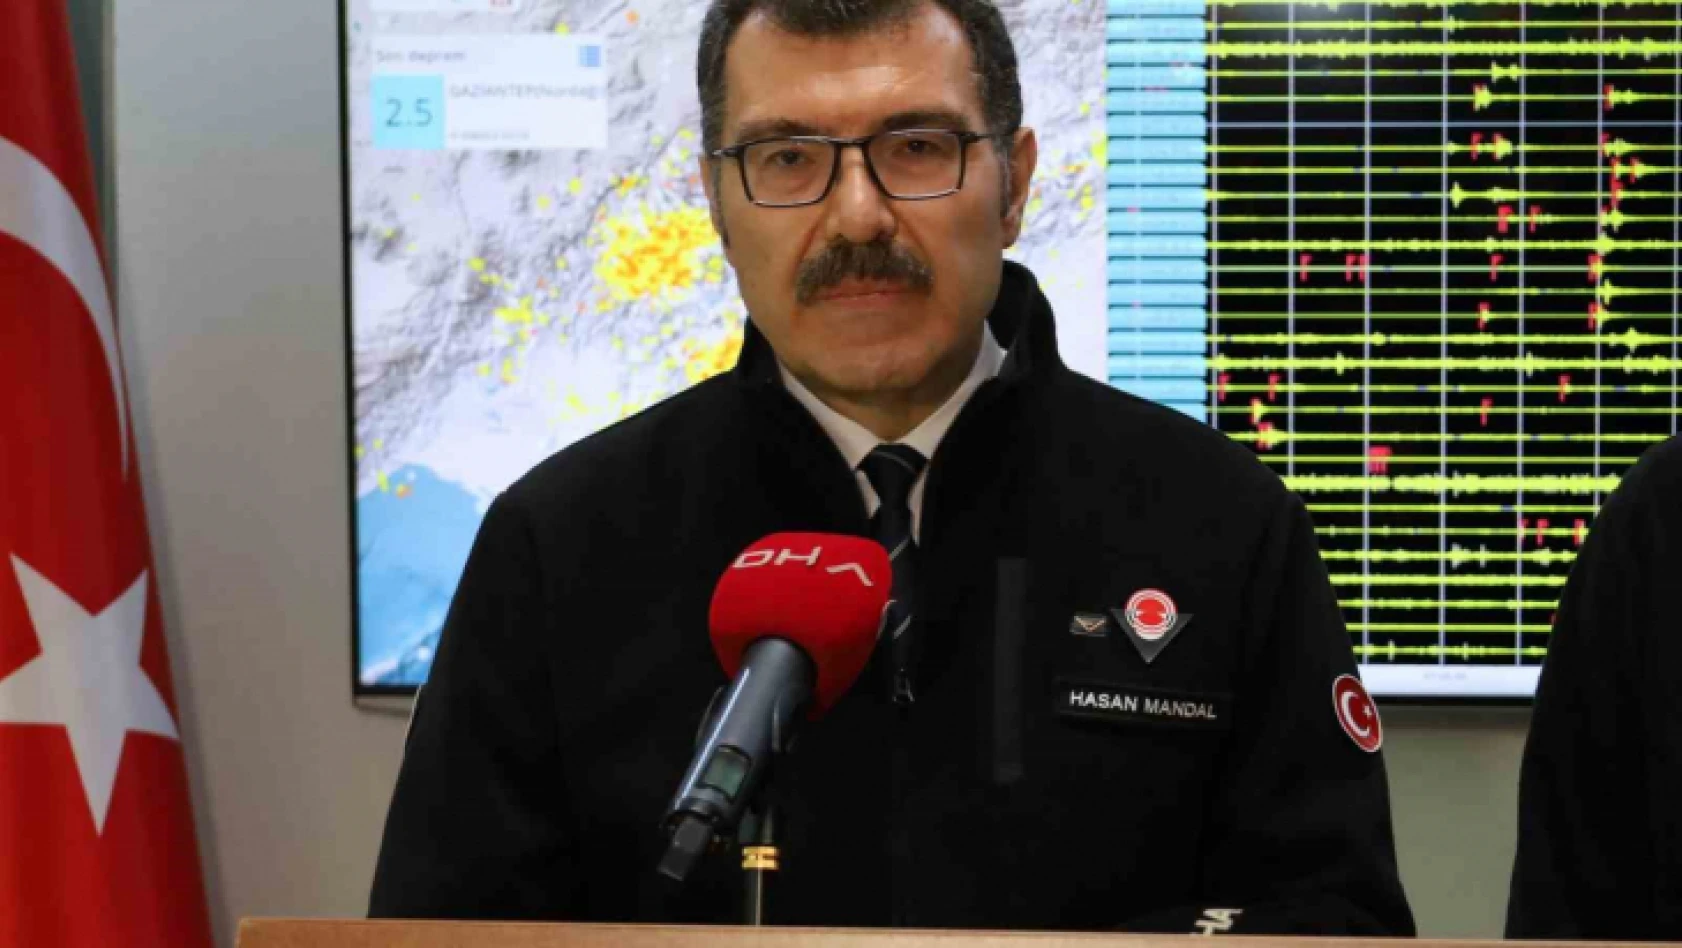 TÜBİTAK Başkanı Prof. Dr. Mandal: 'Her 30 saniyede bir deprem görüyoruz bölgede'